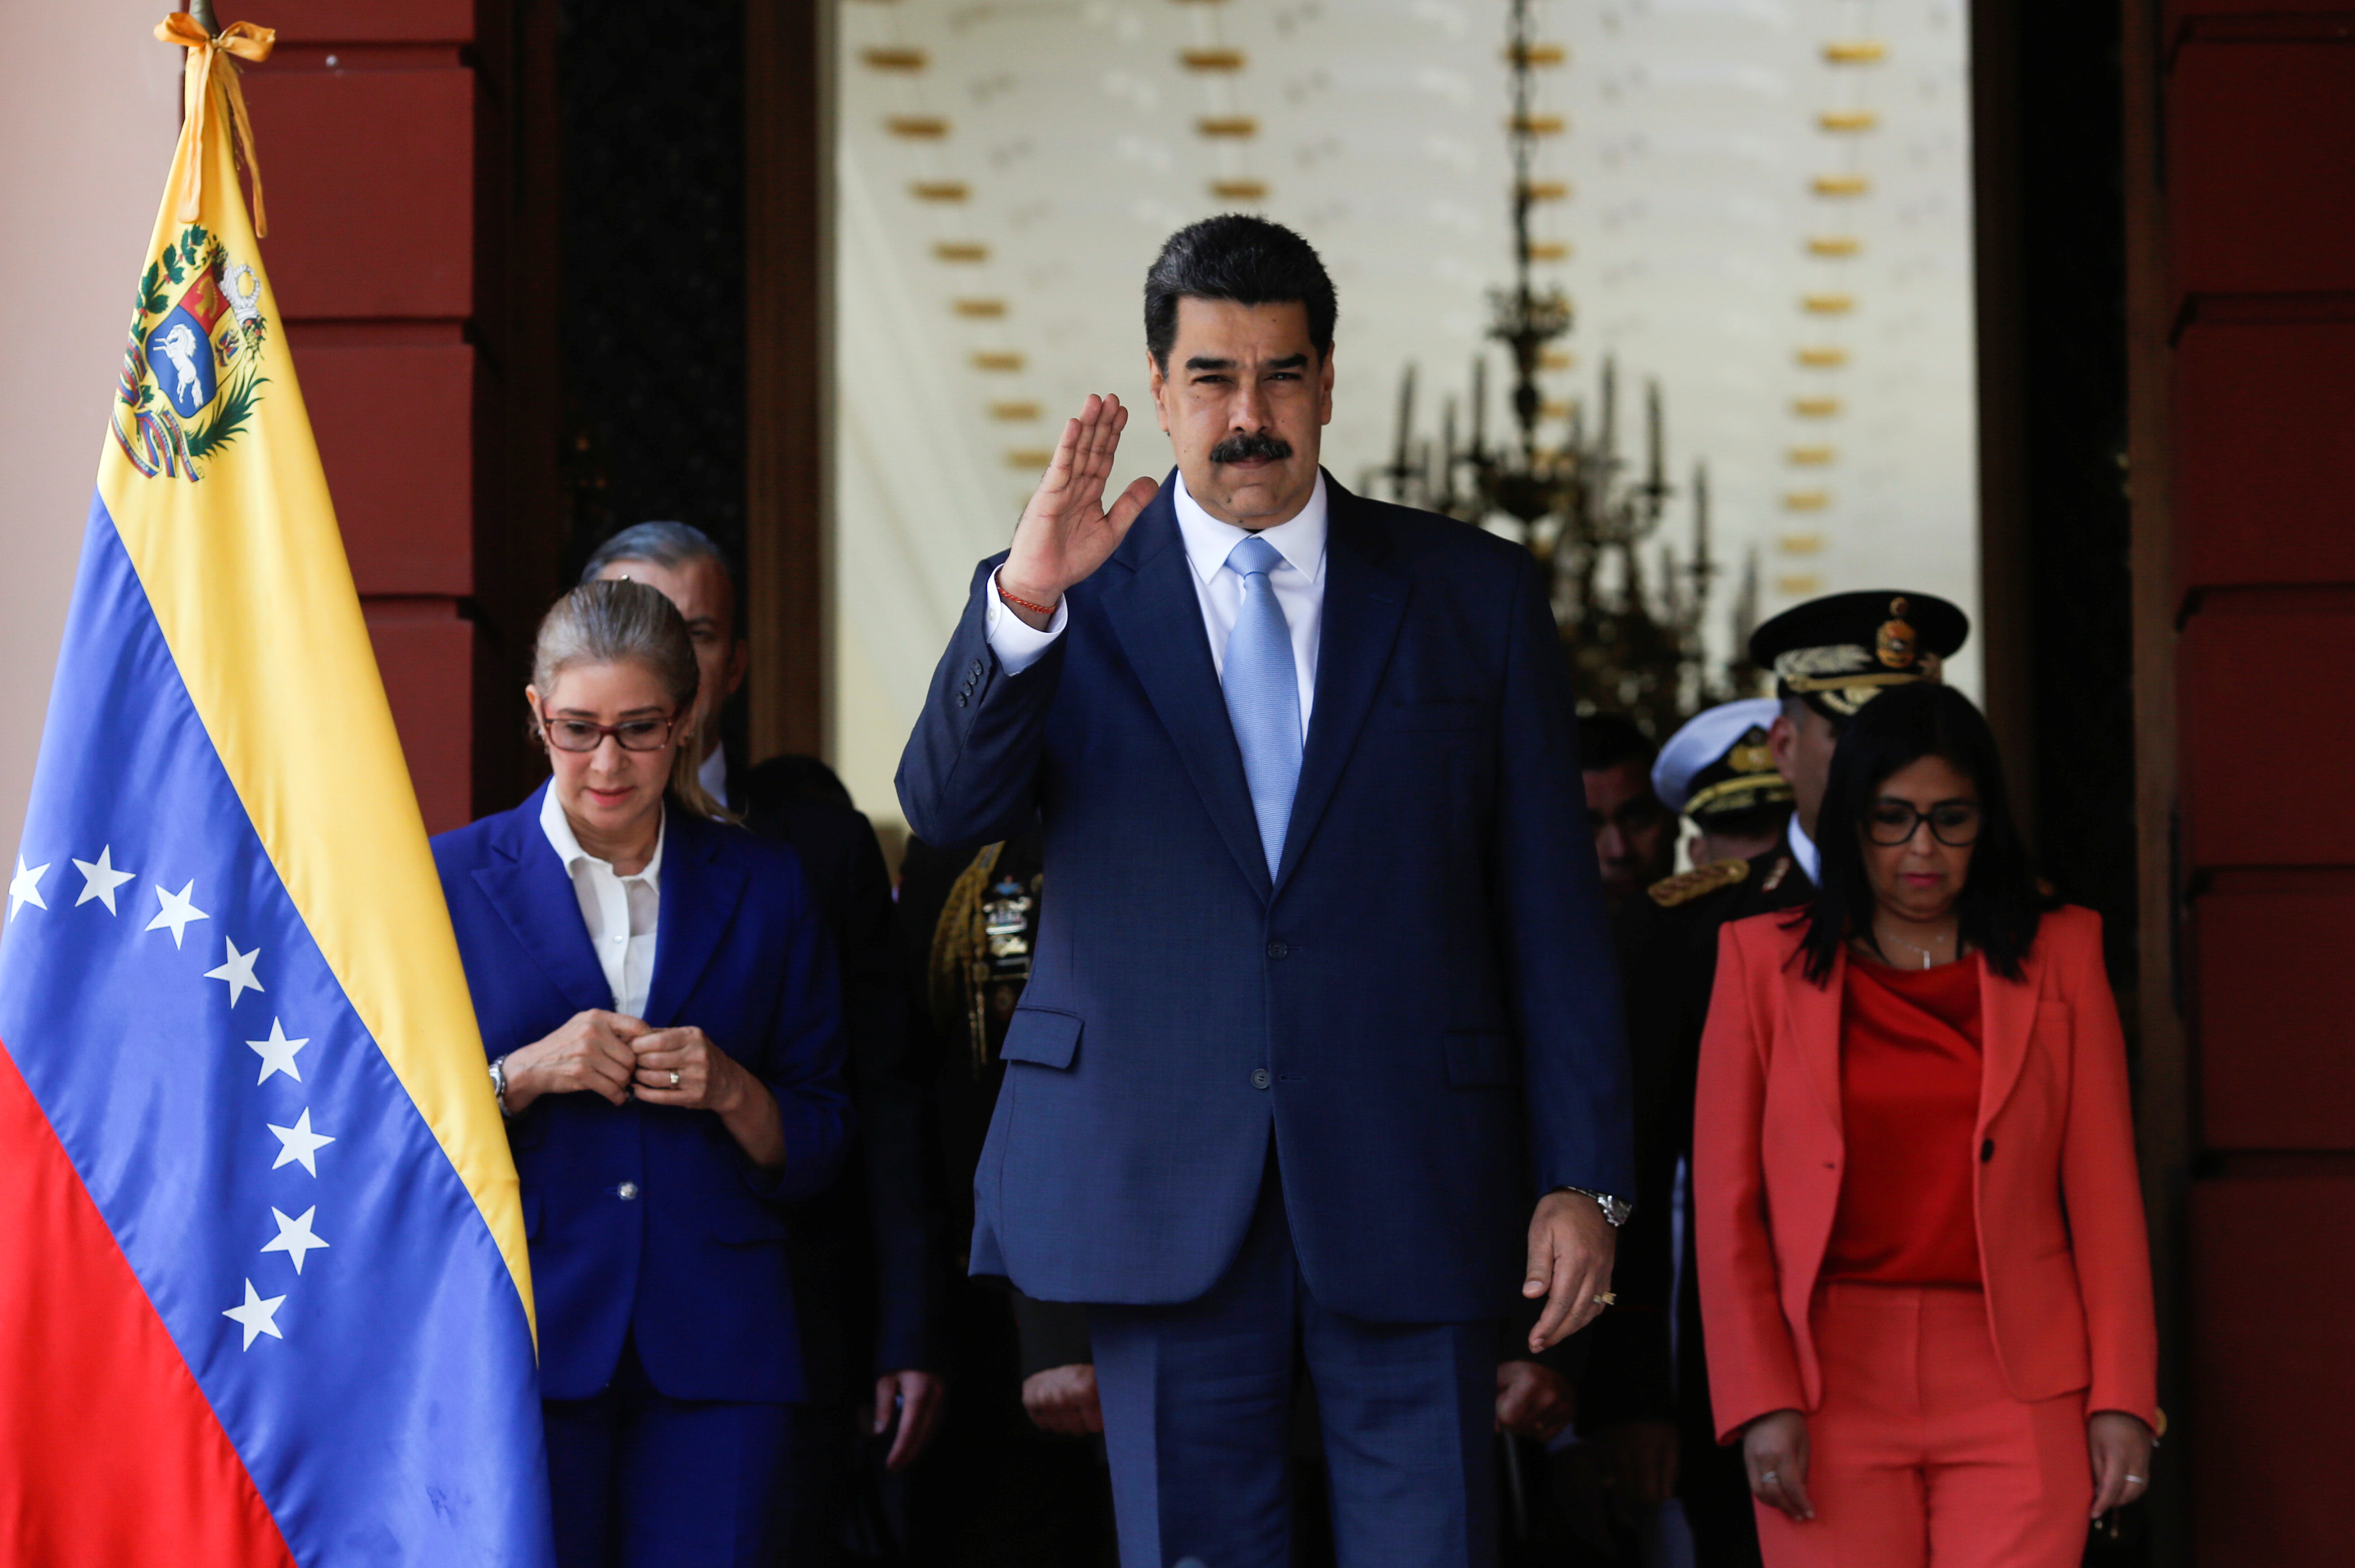 La oposición venezolana condenó la corrupción en el chavismo y acusó a la dictadura de Maduro de saquear los recursos del país